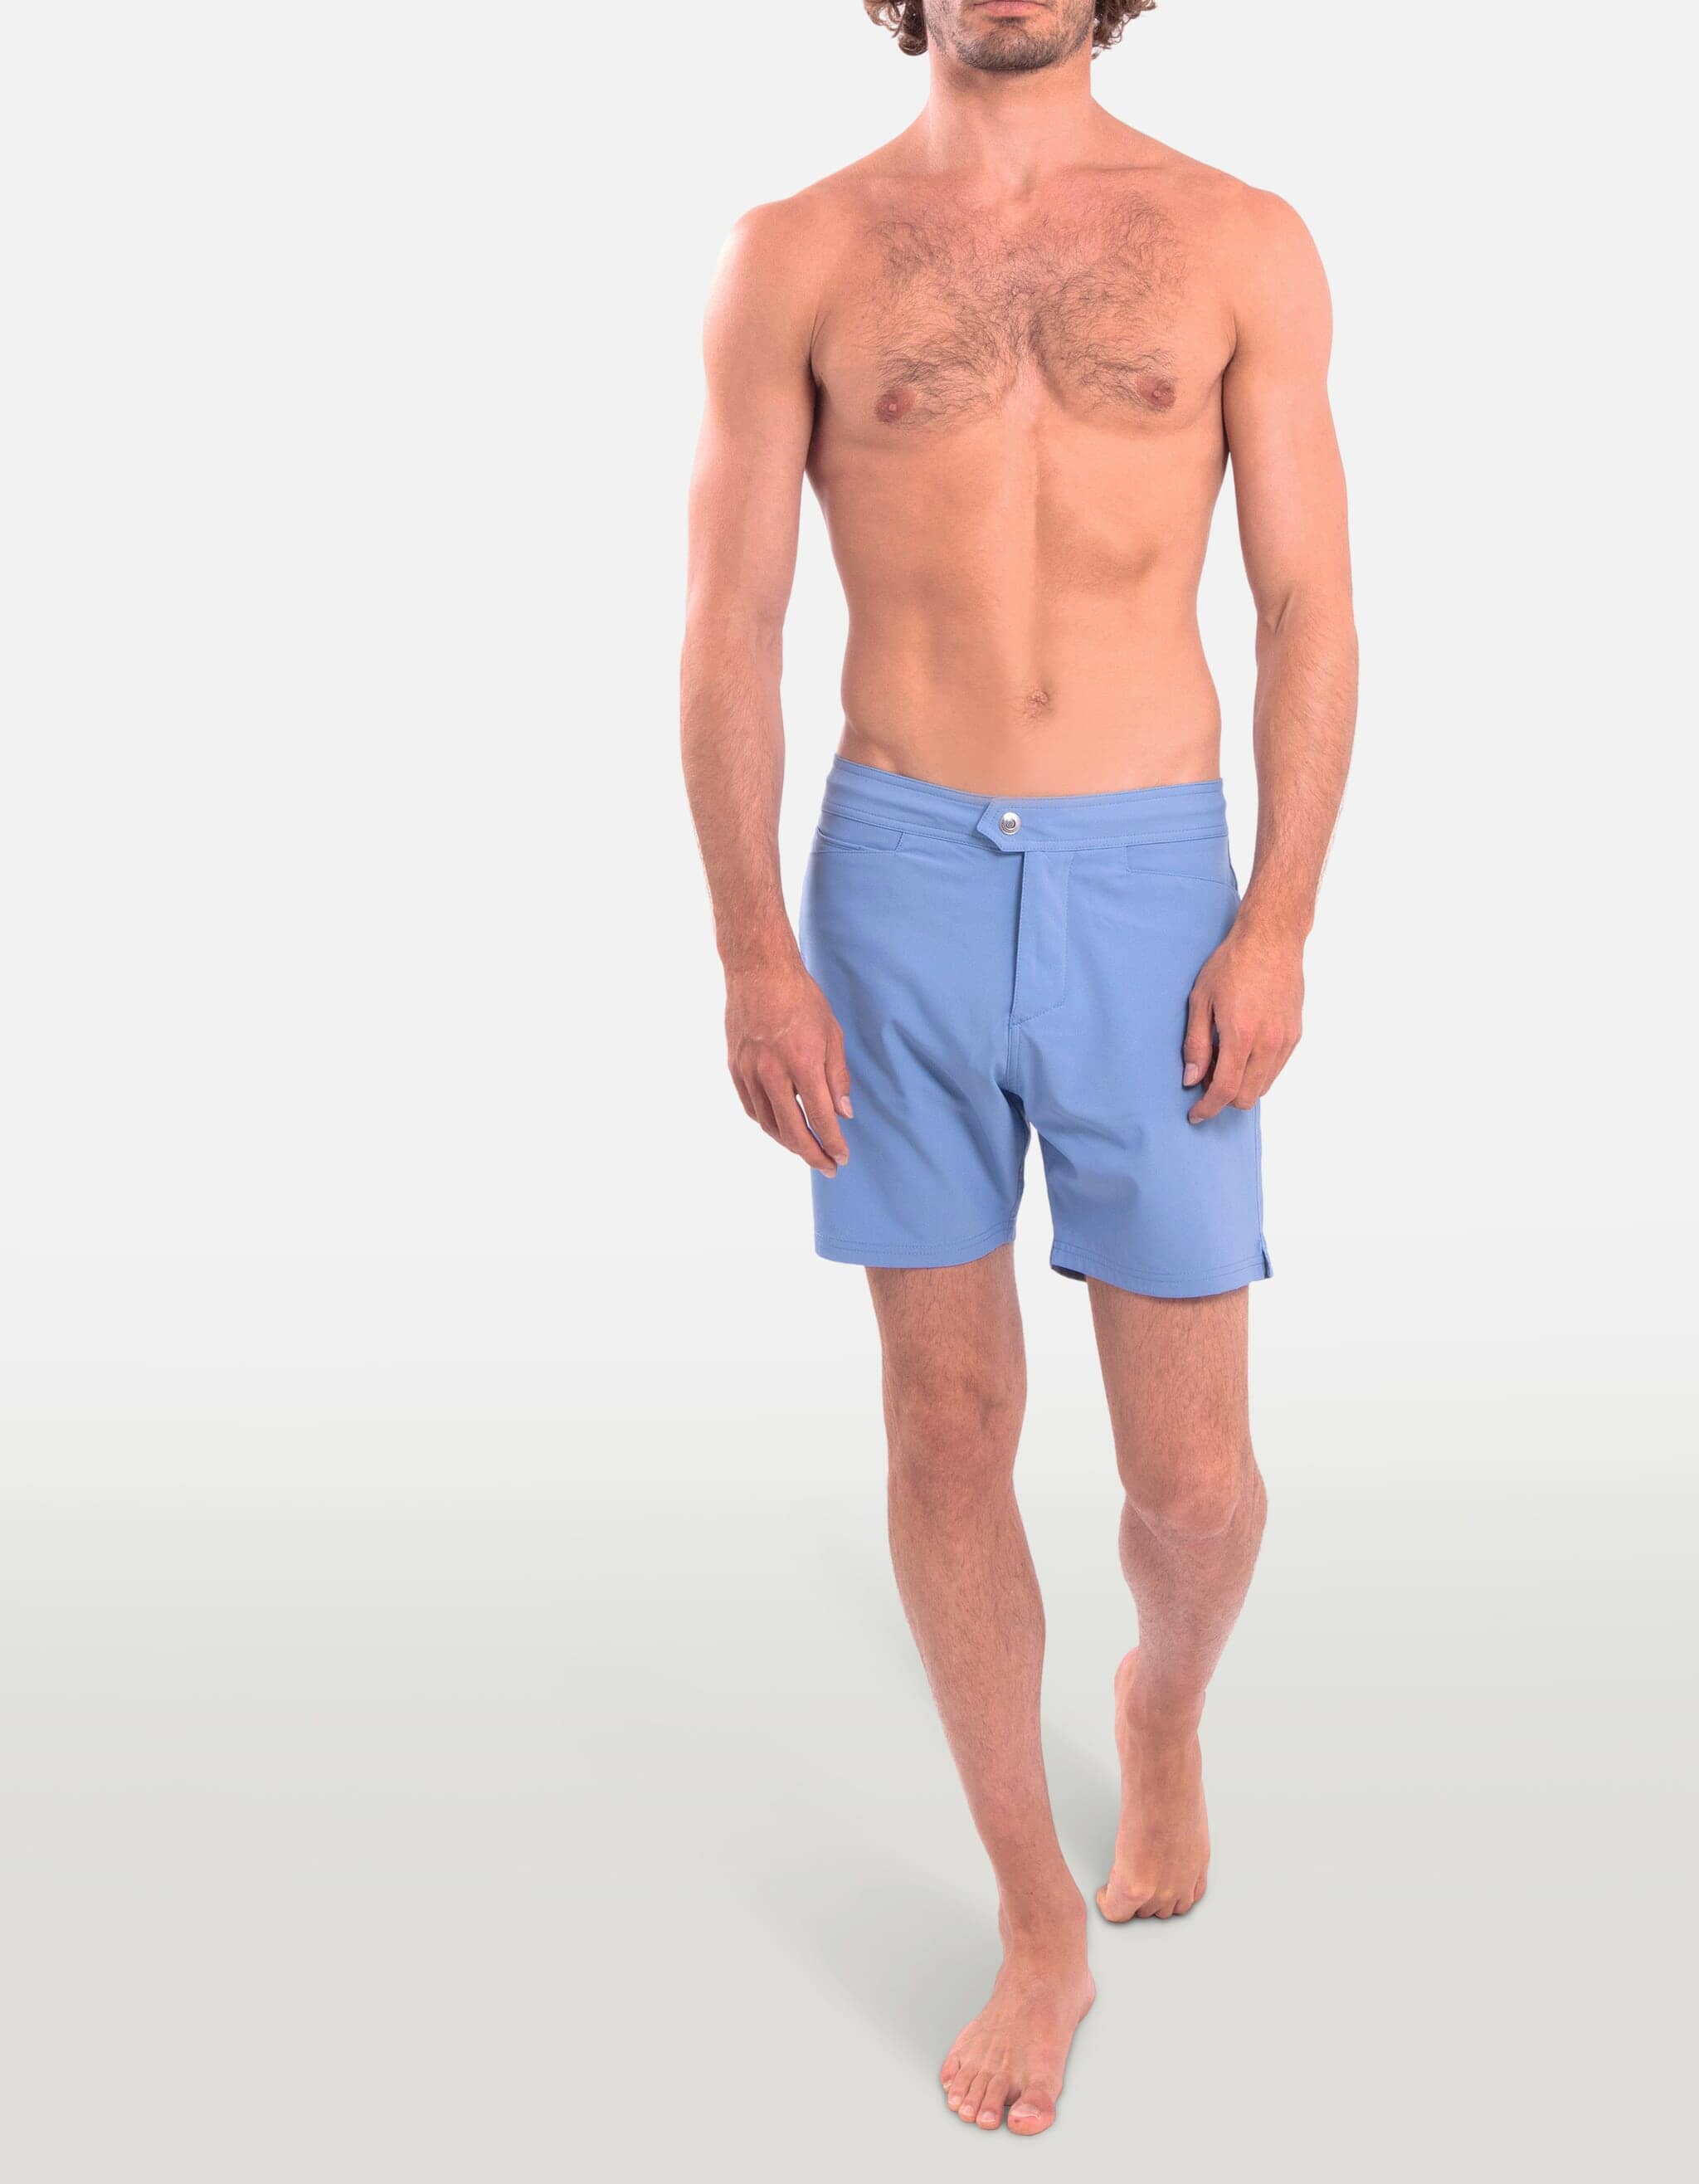 Barth5 - 00. Blue Grey Swim Shorts - Barth5 MACKEENE 